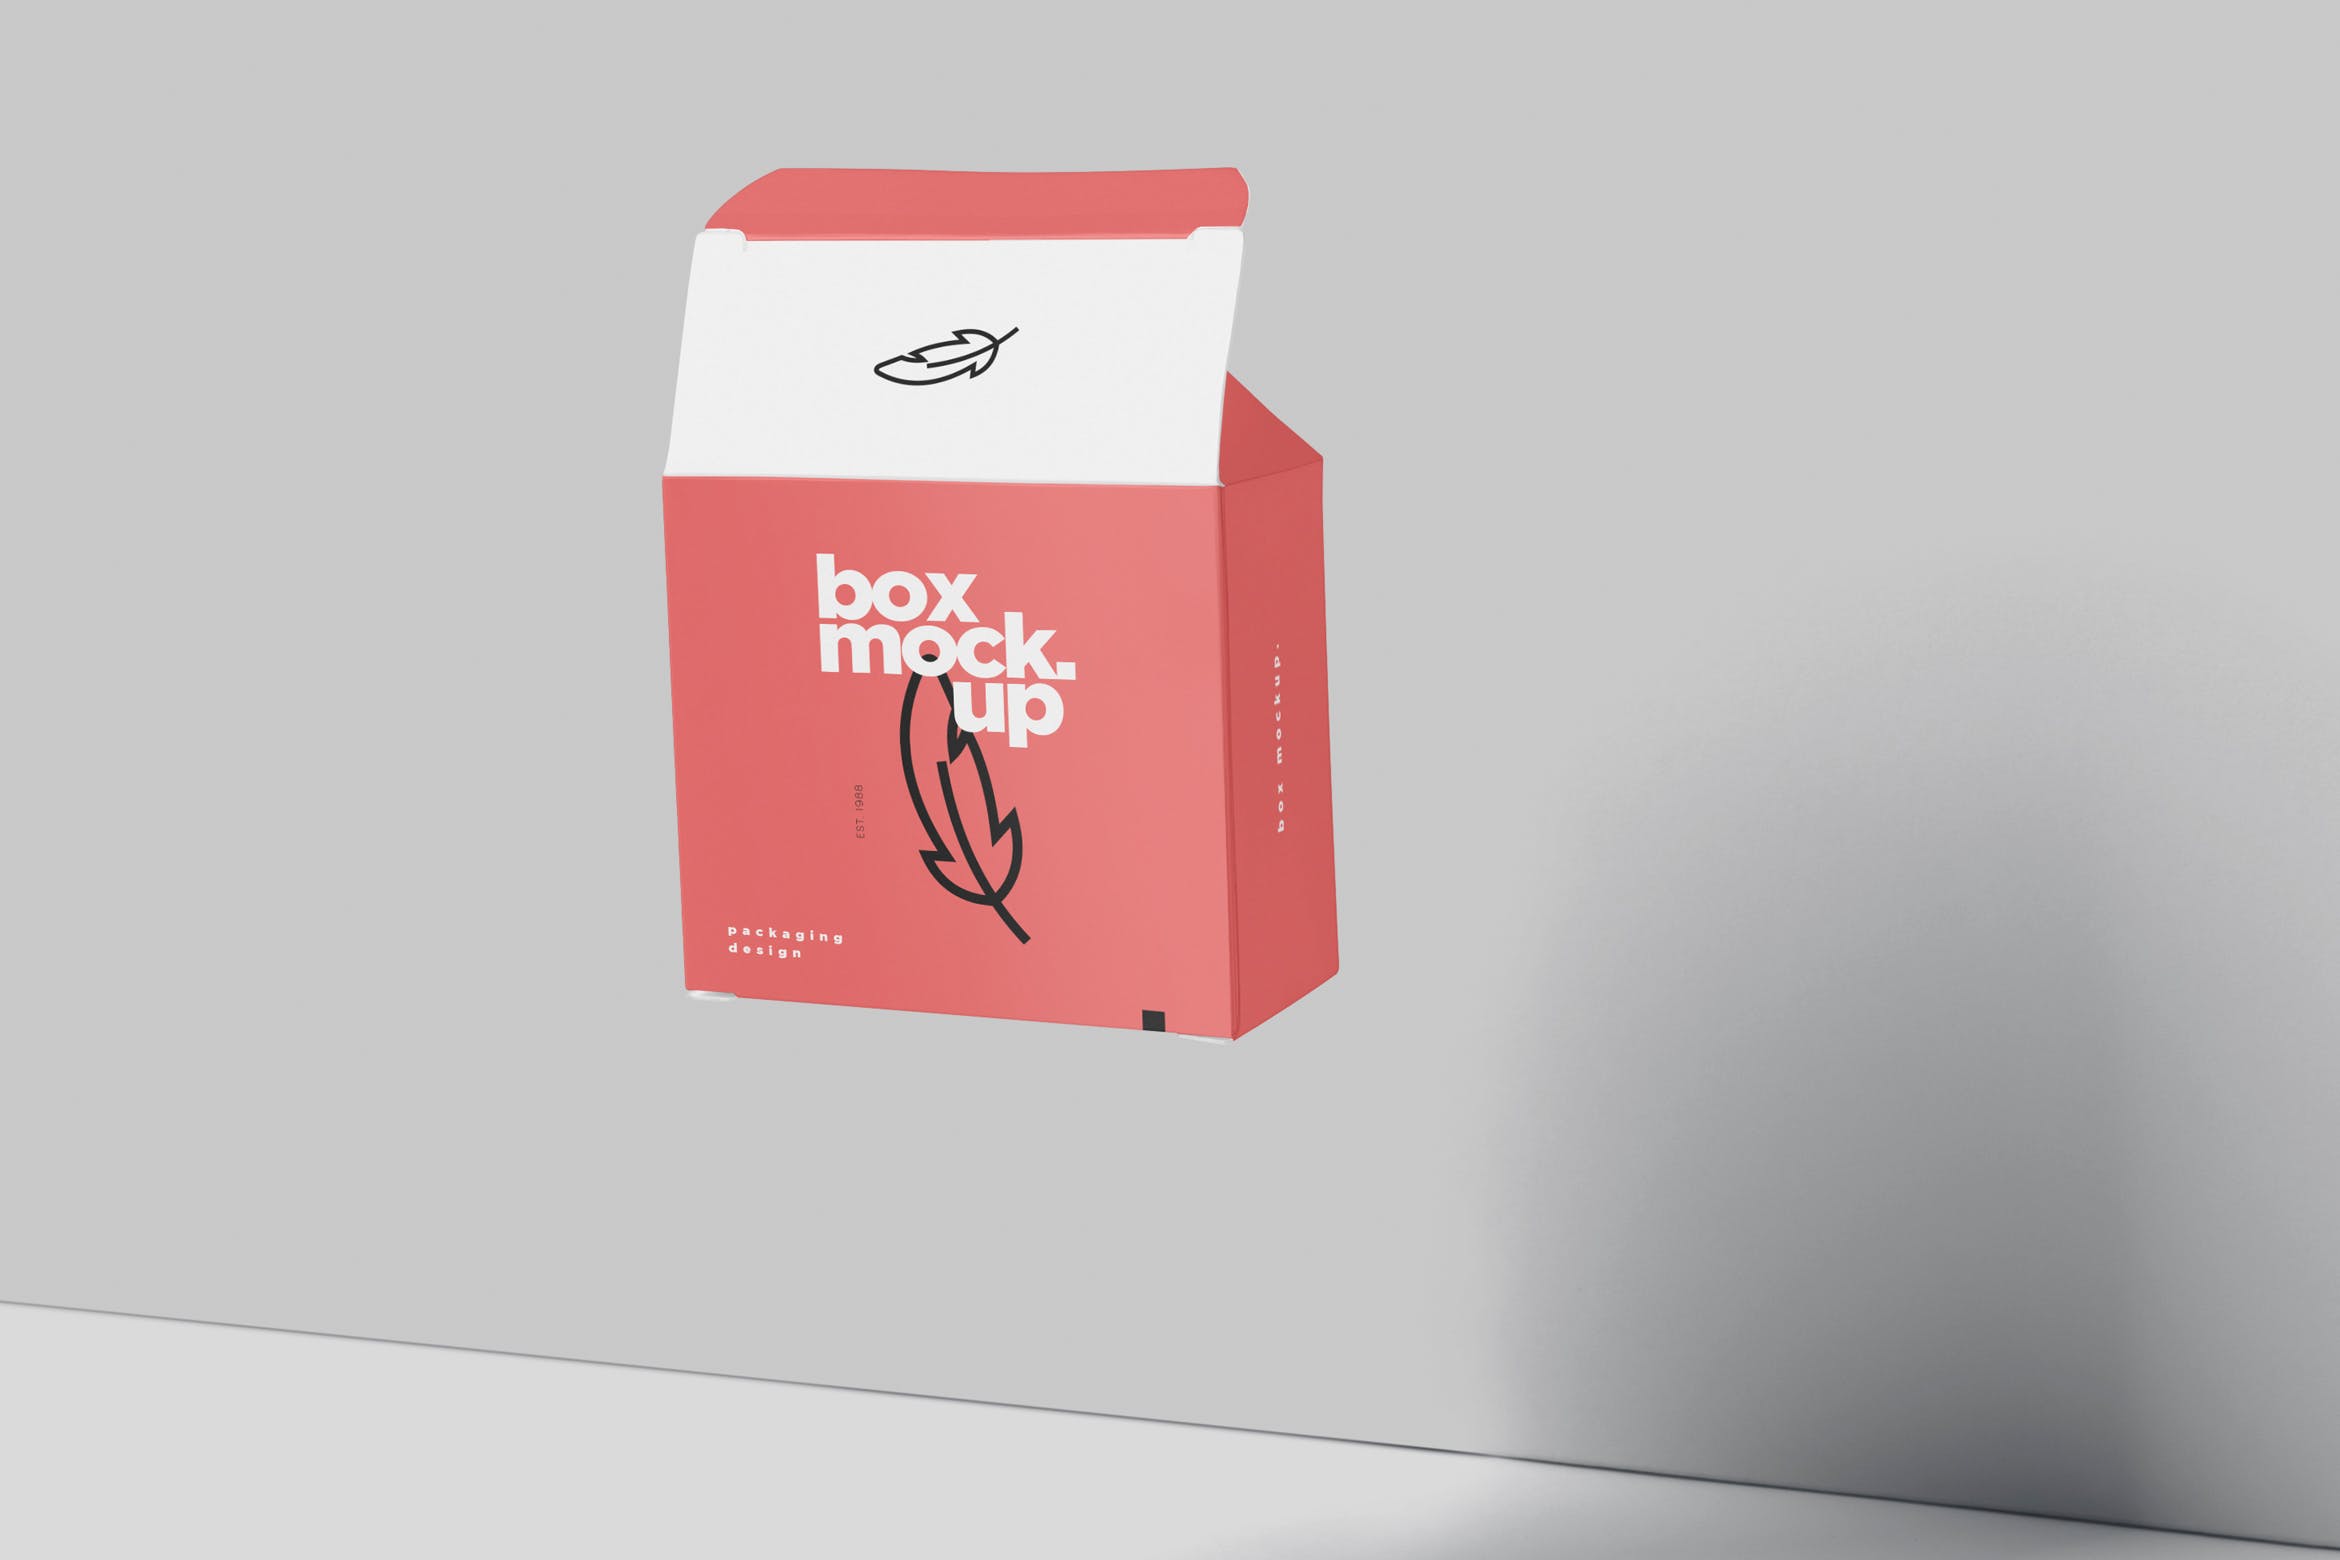 扁平方形包装盒外观设计效果图蚂蚁素材精选 Box Mockup – Square Slim Size插图